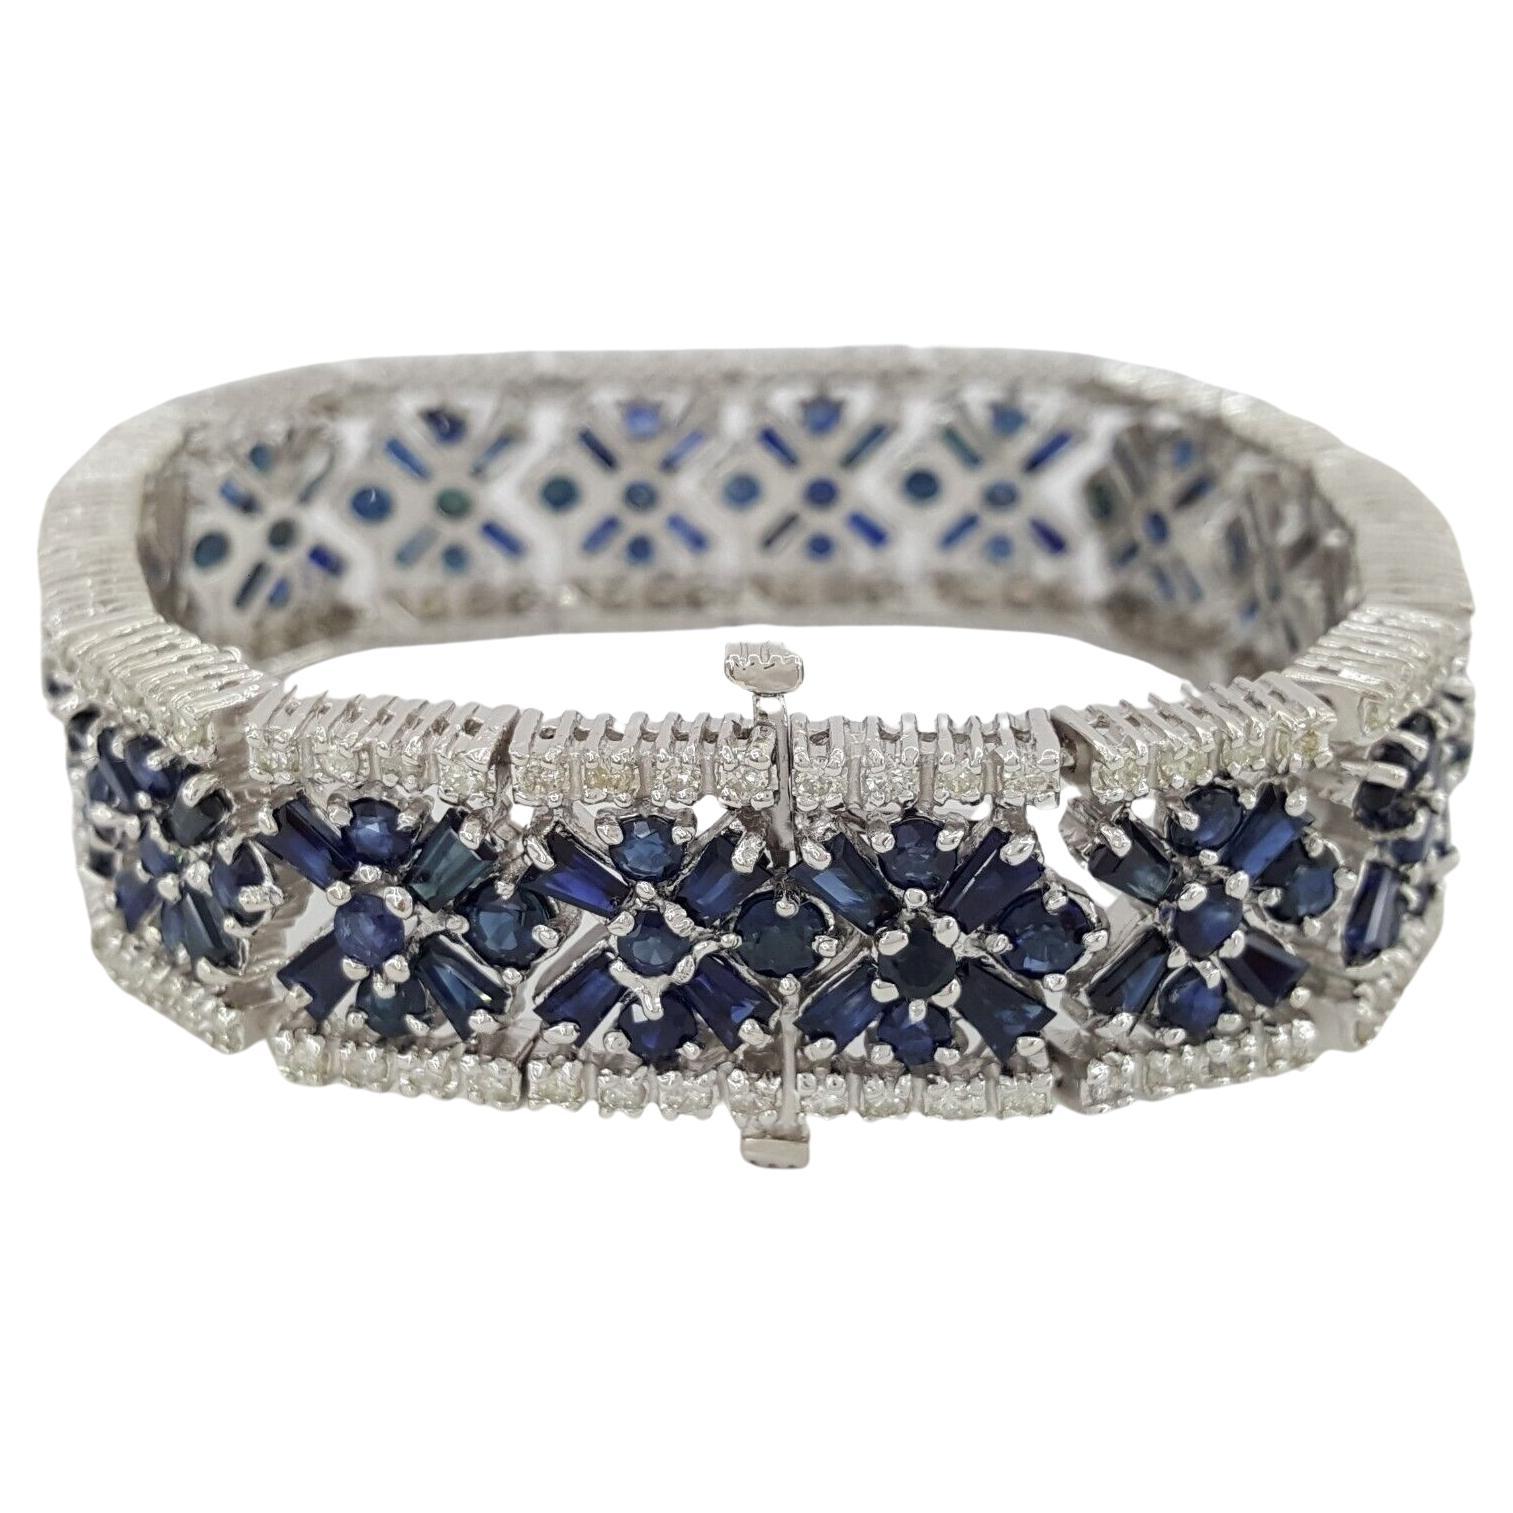  25 carats Round Brilliant Cut Diamonds Blue Sapphires Bracelet 